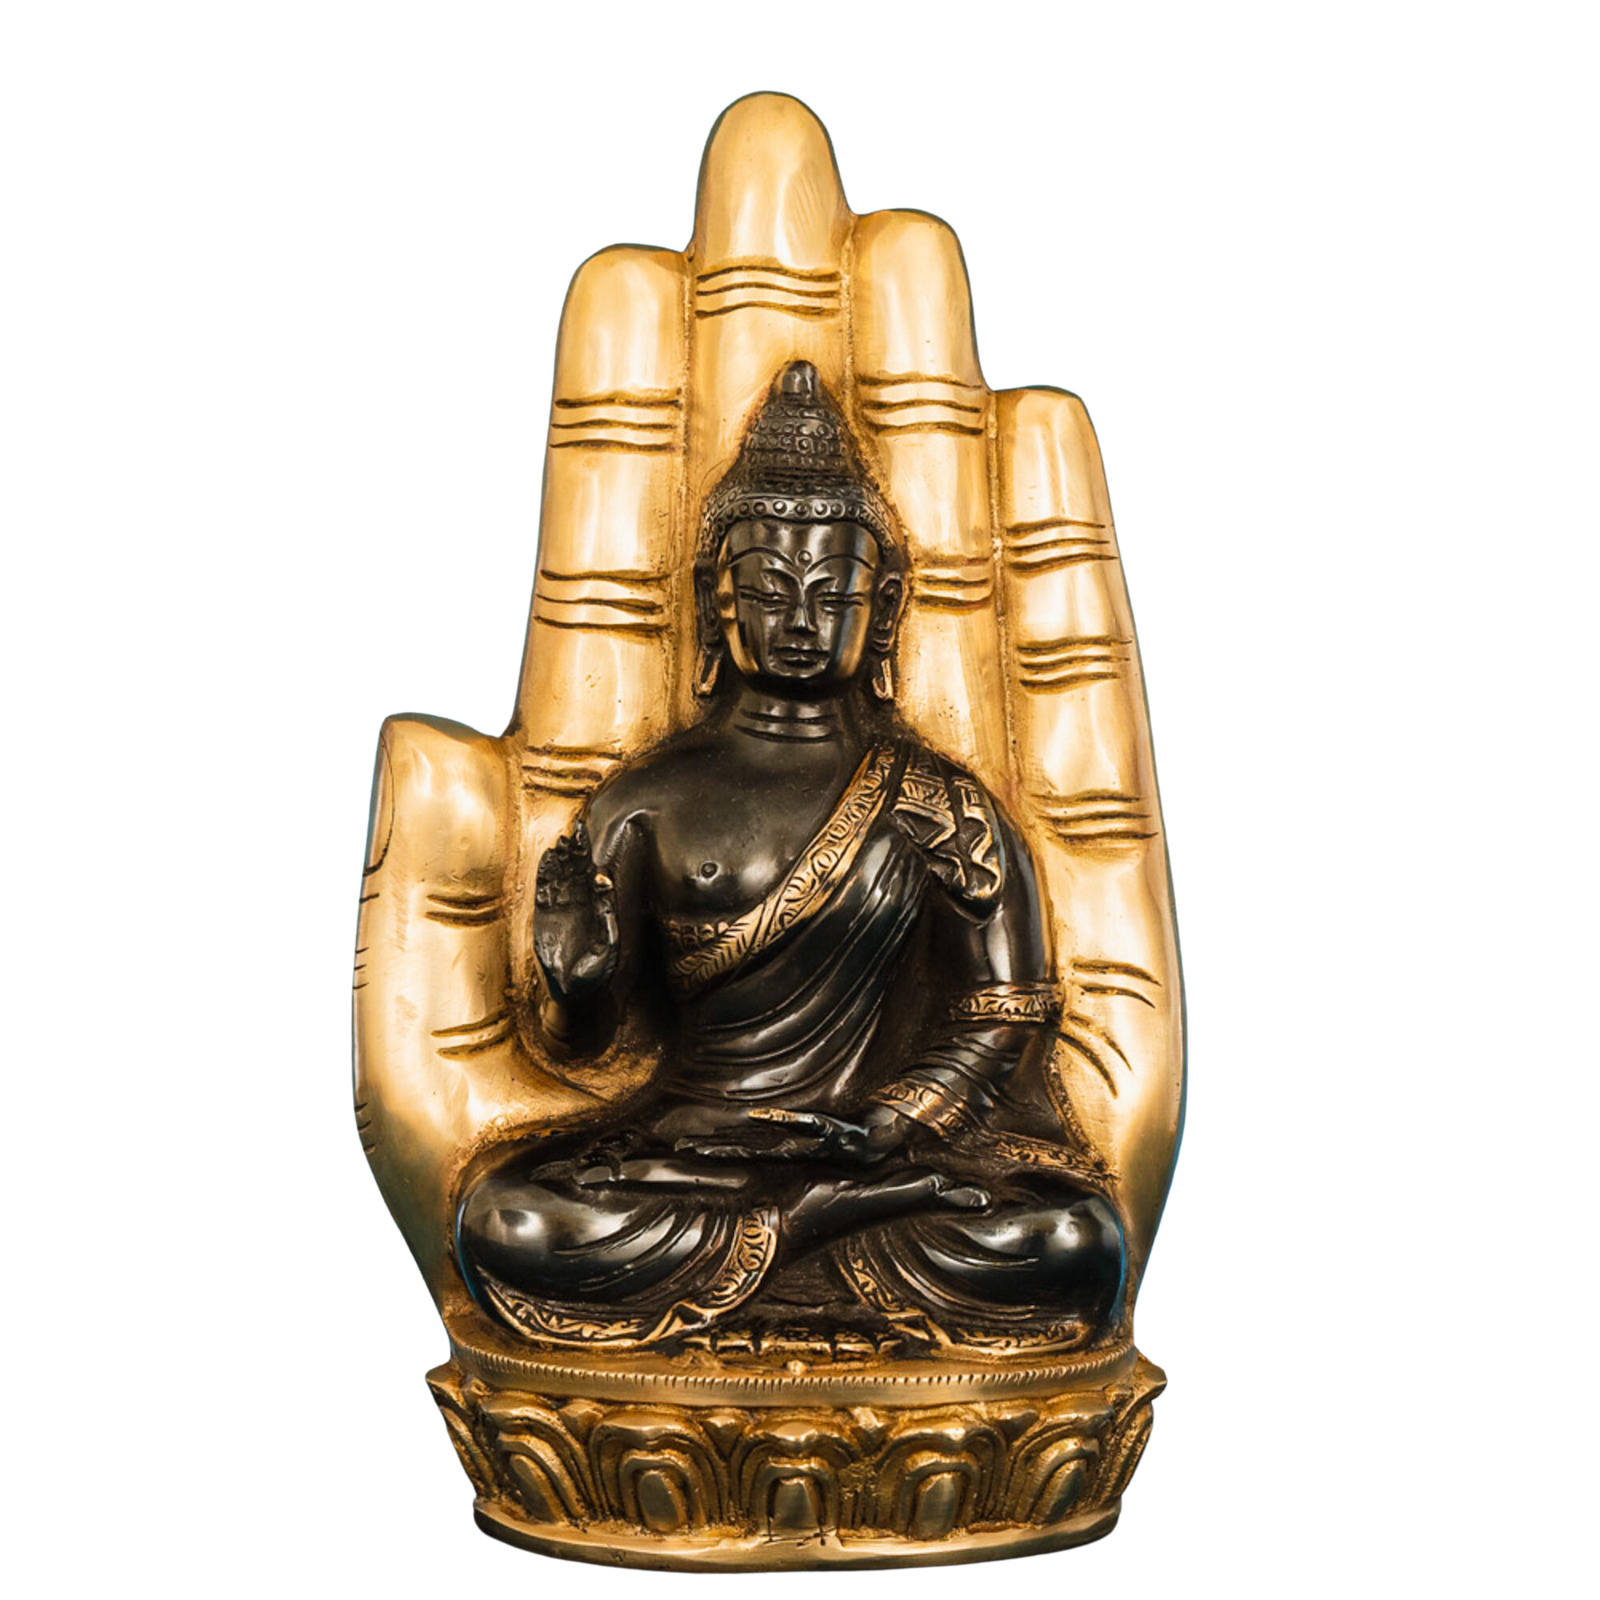 indigenite Brass Buddha Statue | Size - (9.5 x 2 x 5.5) Inches, Weight:2.4 kg